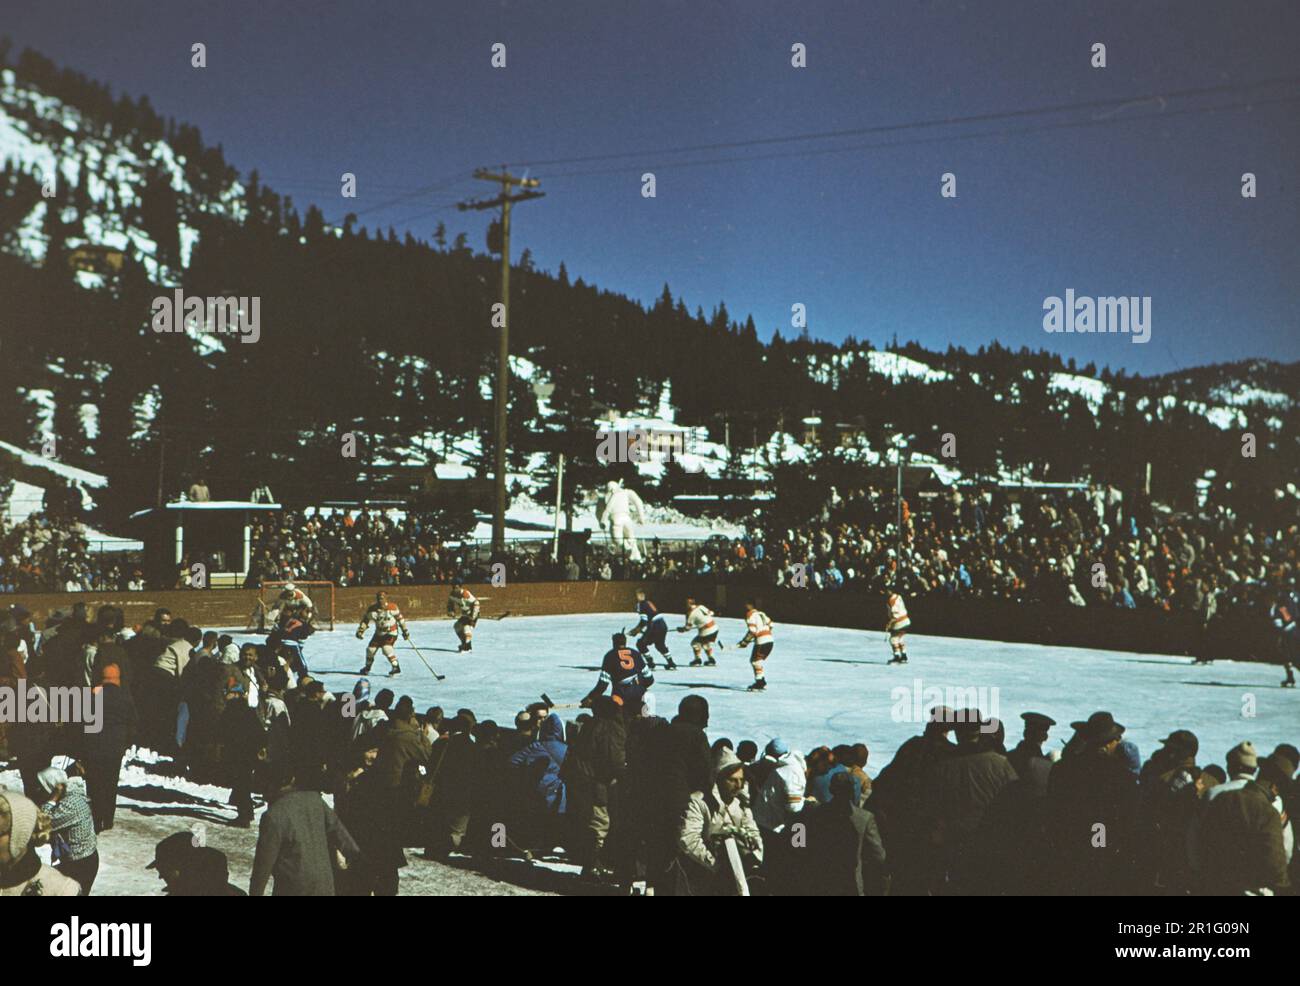 Jeux olympiques d'hiver de 1960 à Squaw Valley Californie: Hockey masculin - Finlande vs Japon sur la patinoire est de Squaw Valley Banque D'Images